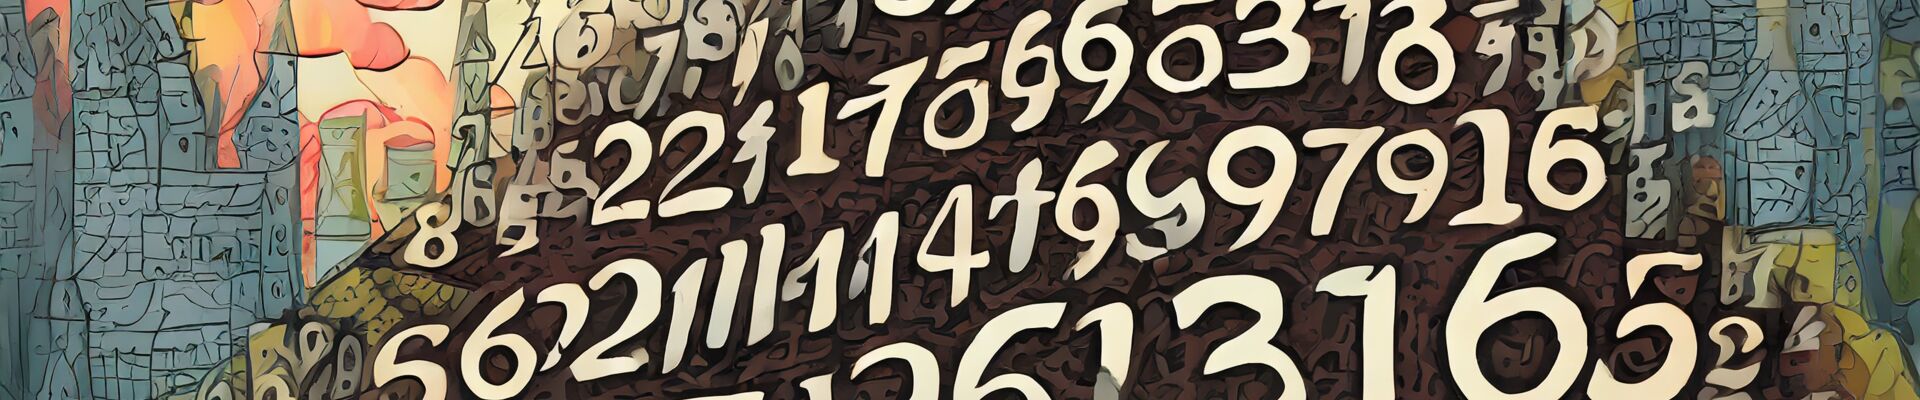 Wie schreibt man Zahlen - Zahlwort - Zahlen in Worten